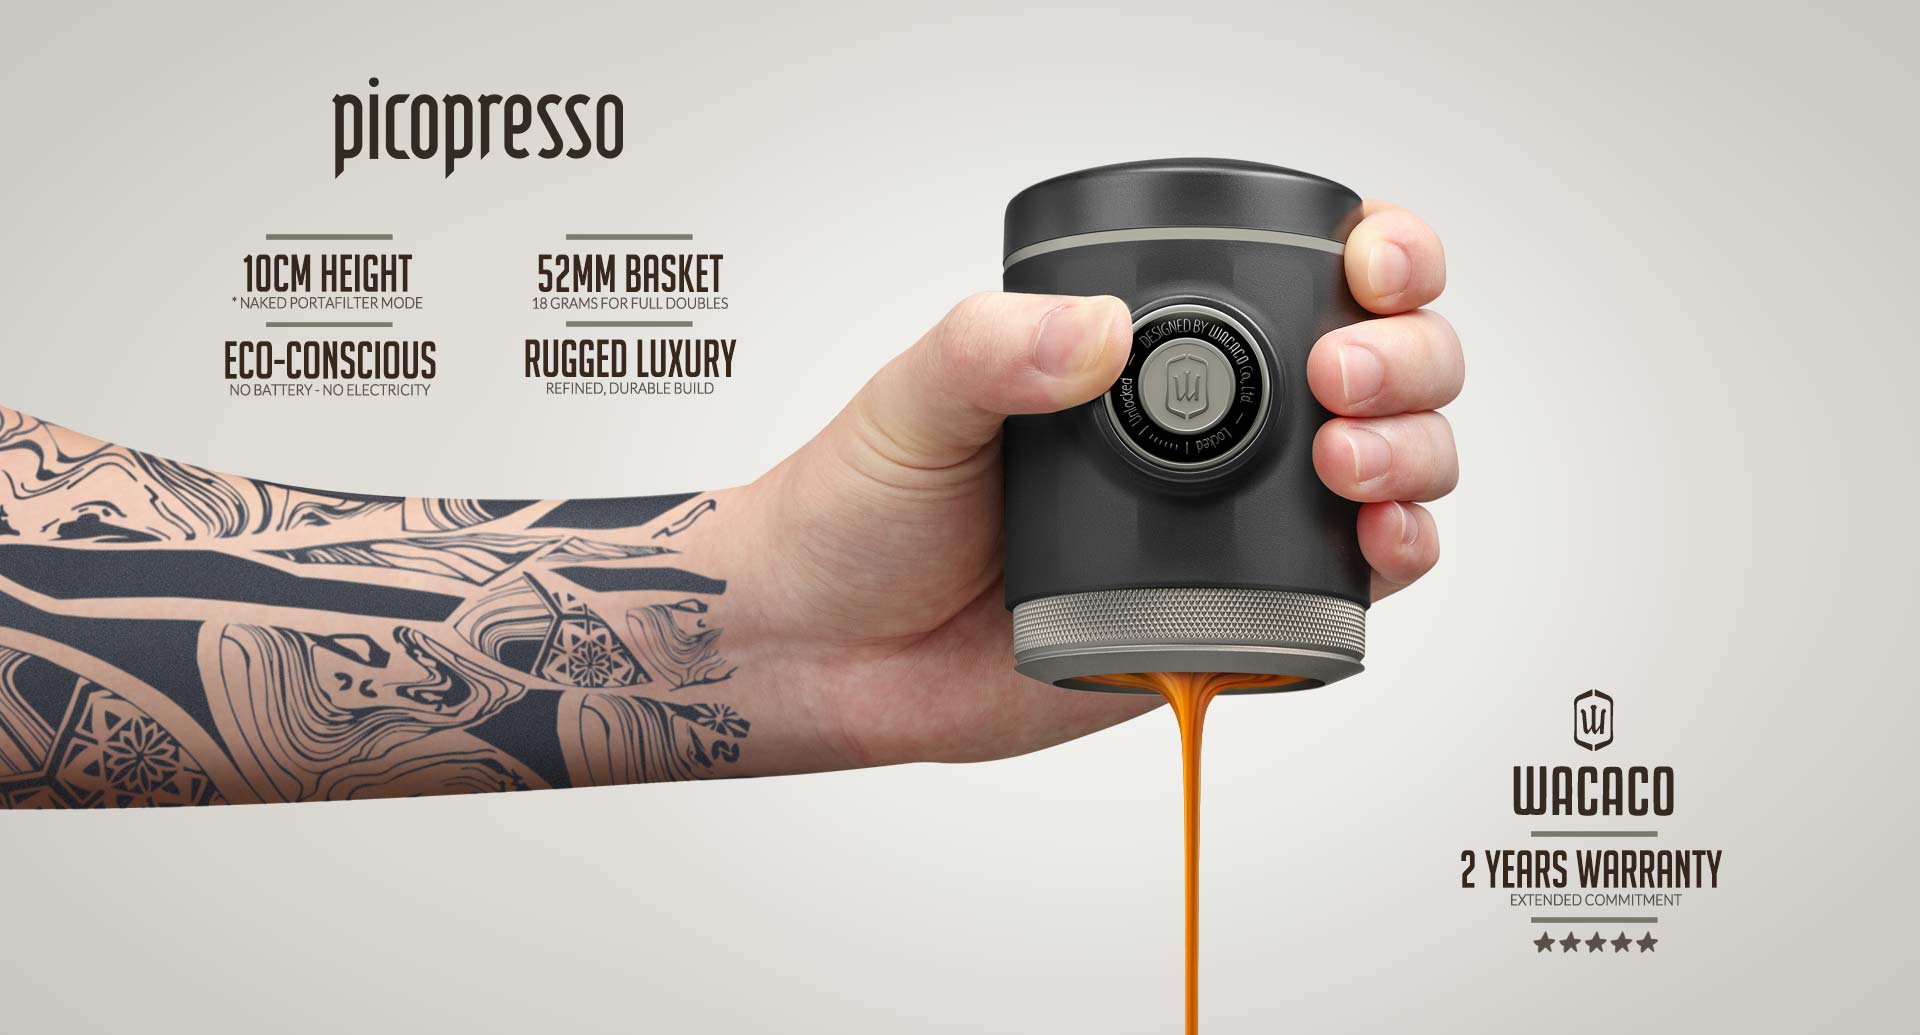 WACACO Picopresso Portable Espresso Machine - BUNAMARKET